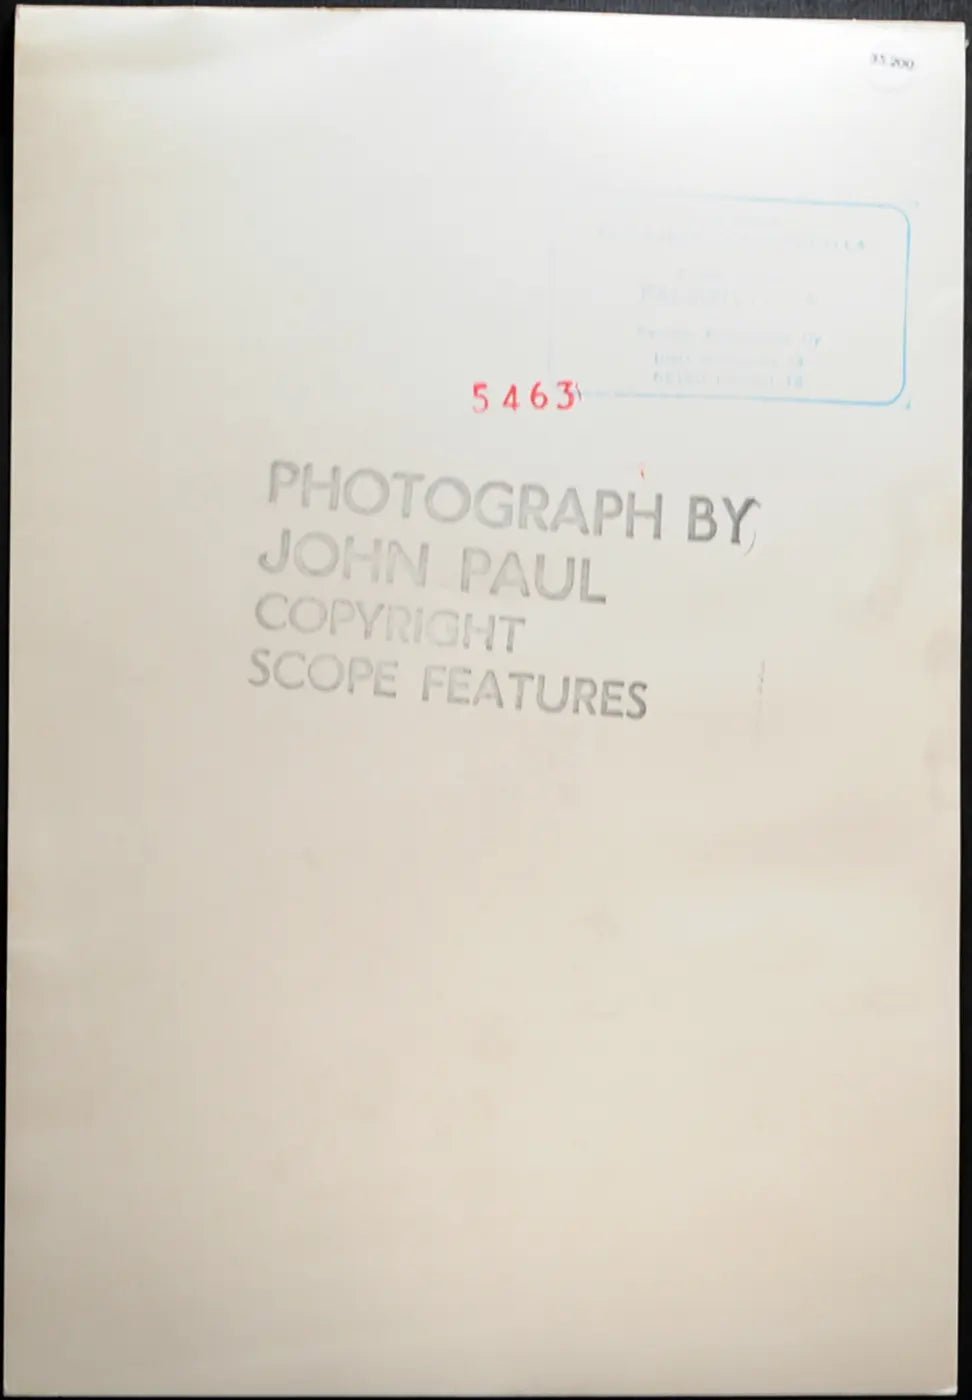 Modella anni 70 Ft 35200 - Stampa 17x25 cm - Farabola Stampa ai sali d'argento